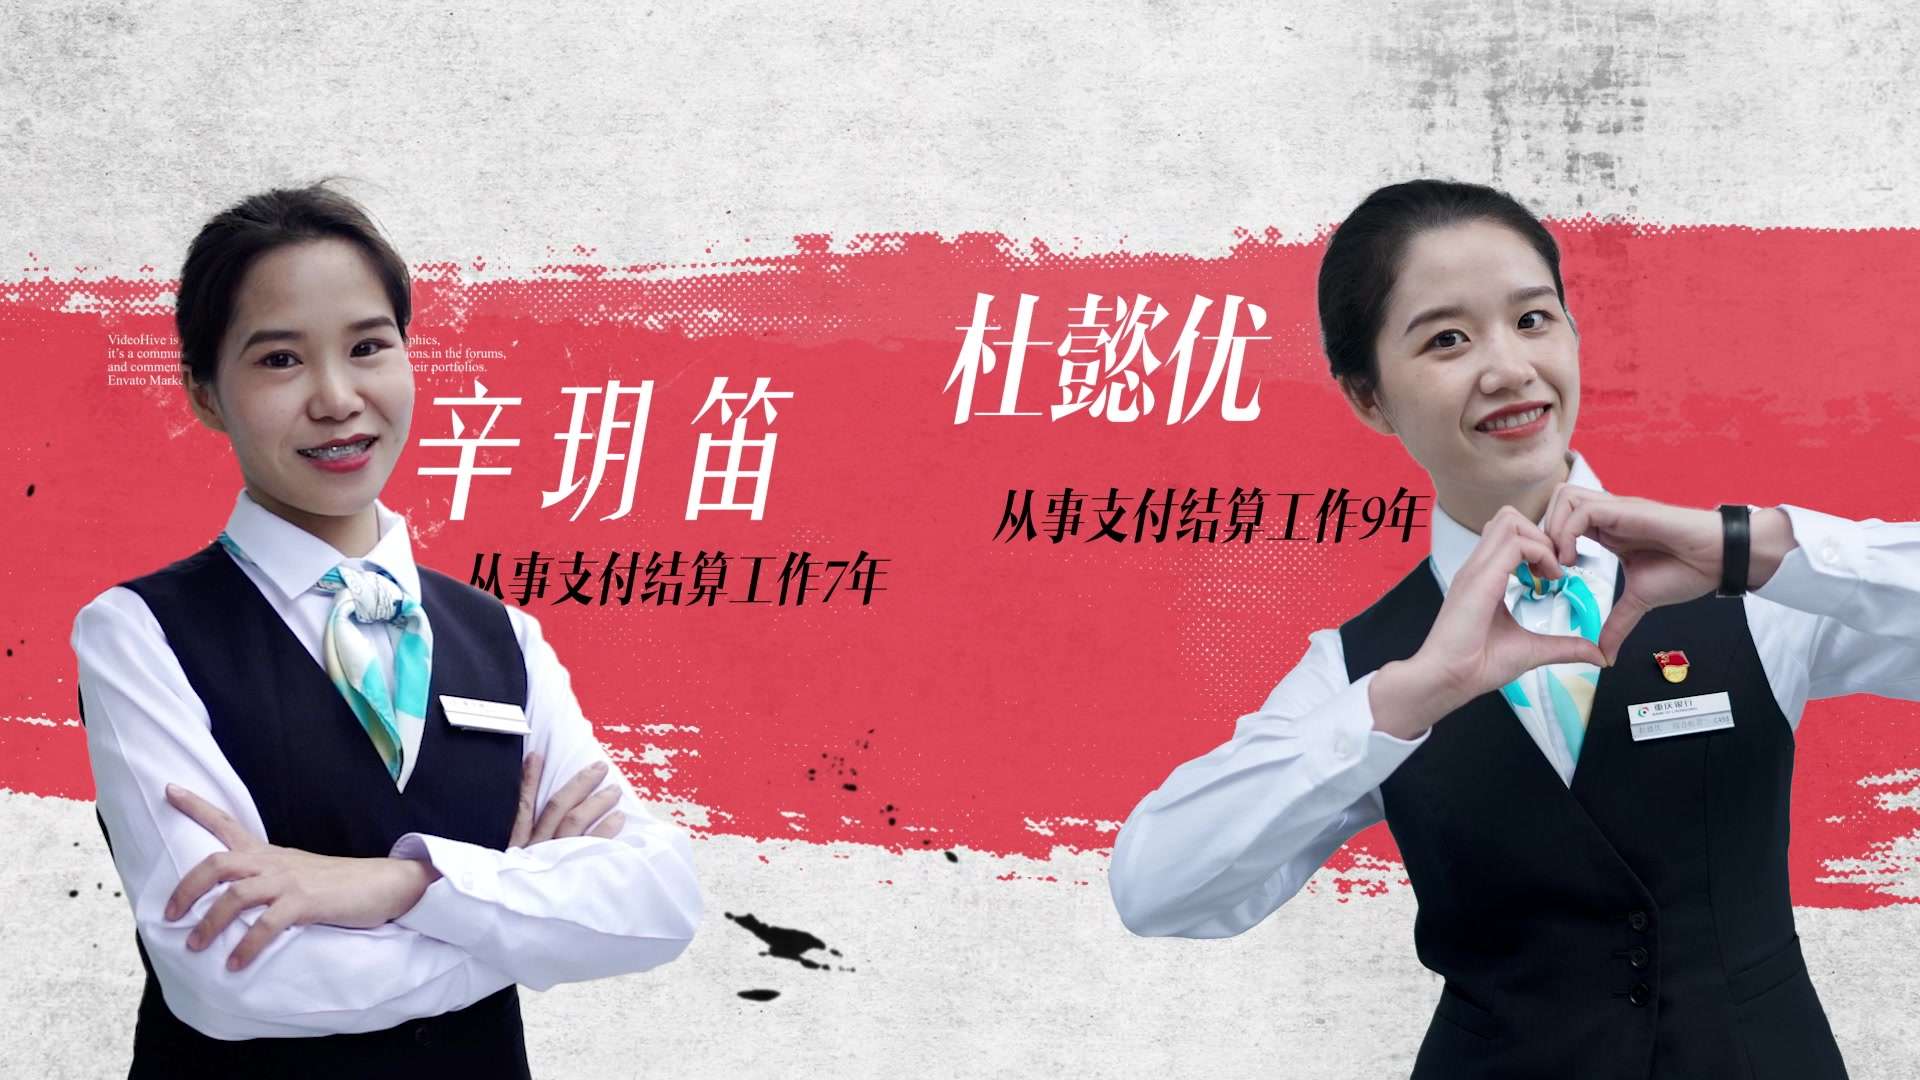 重庆银行 支付结算赛事宣言30s短片